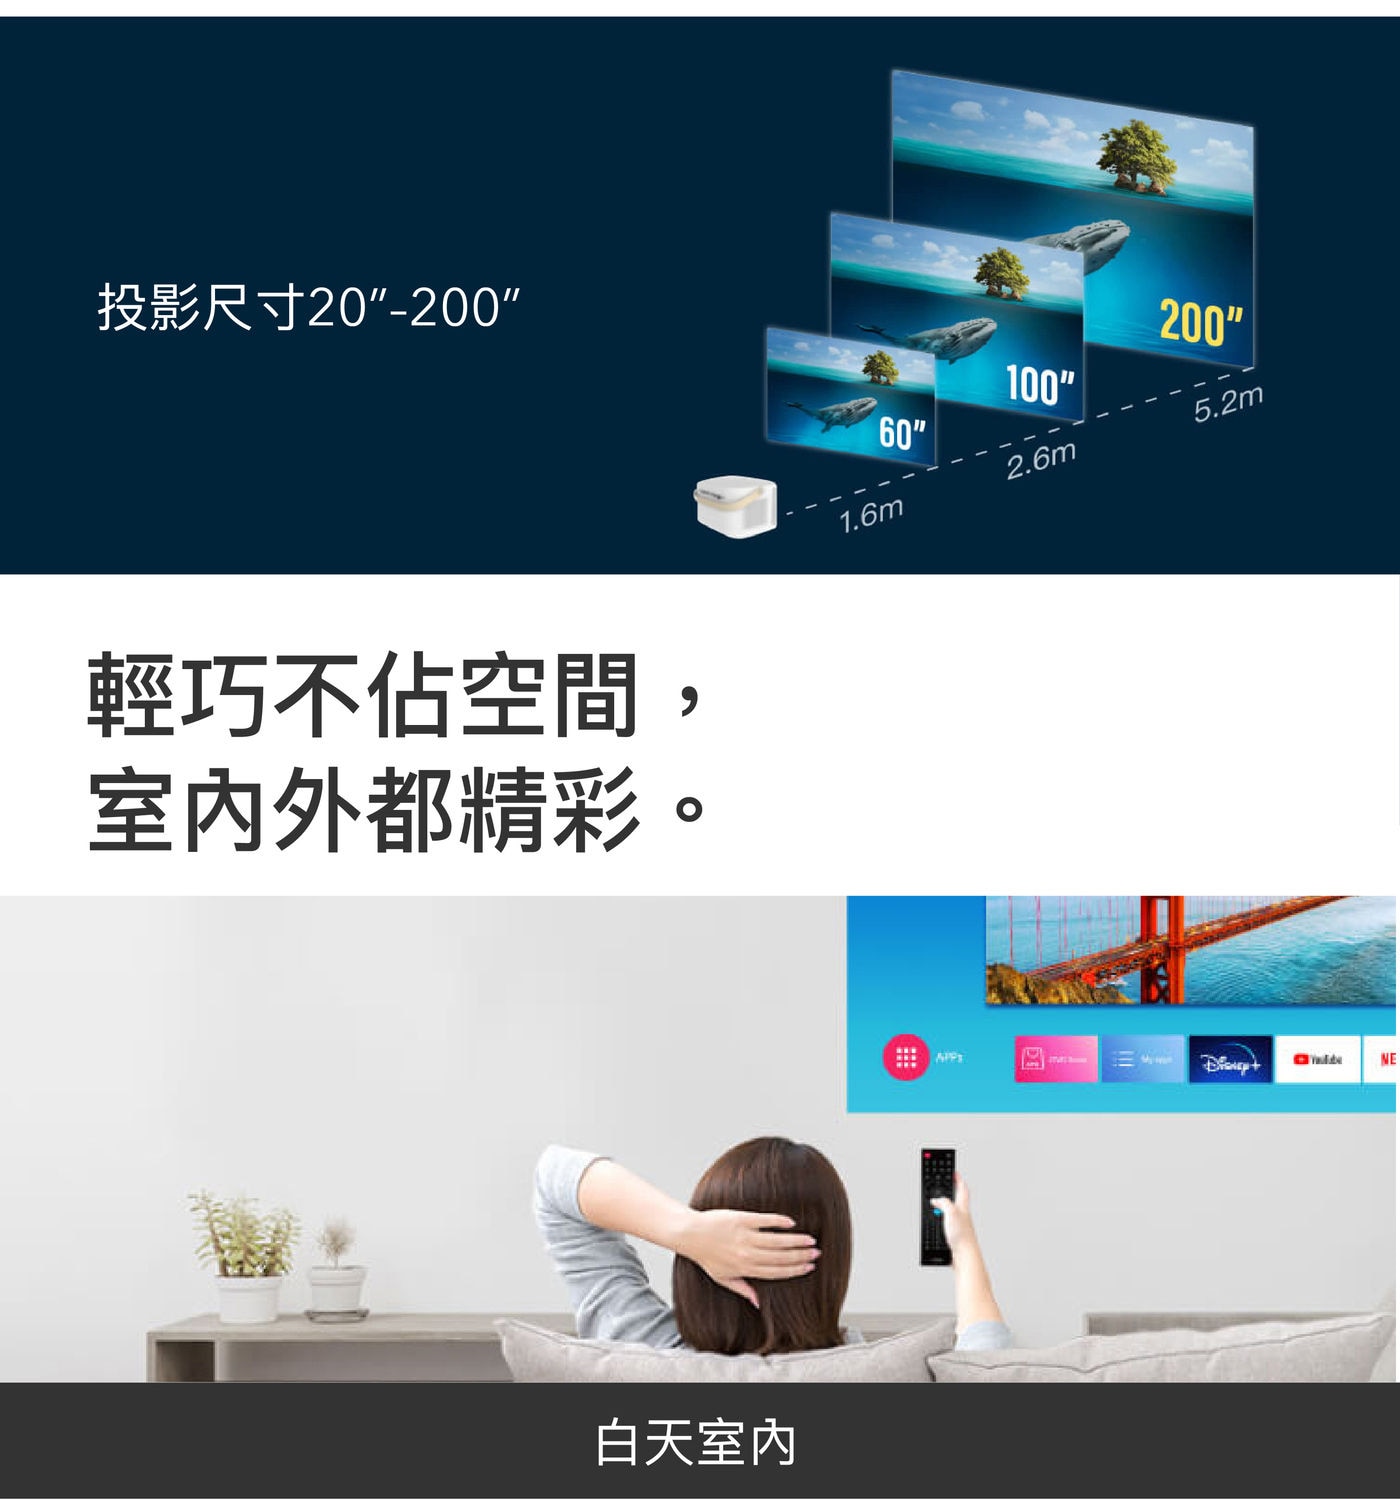 OVO 百吋無框電視 3D增強版 K3-E投影尺寸20